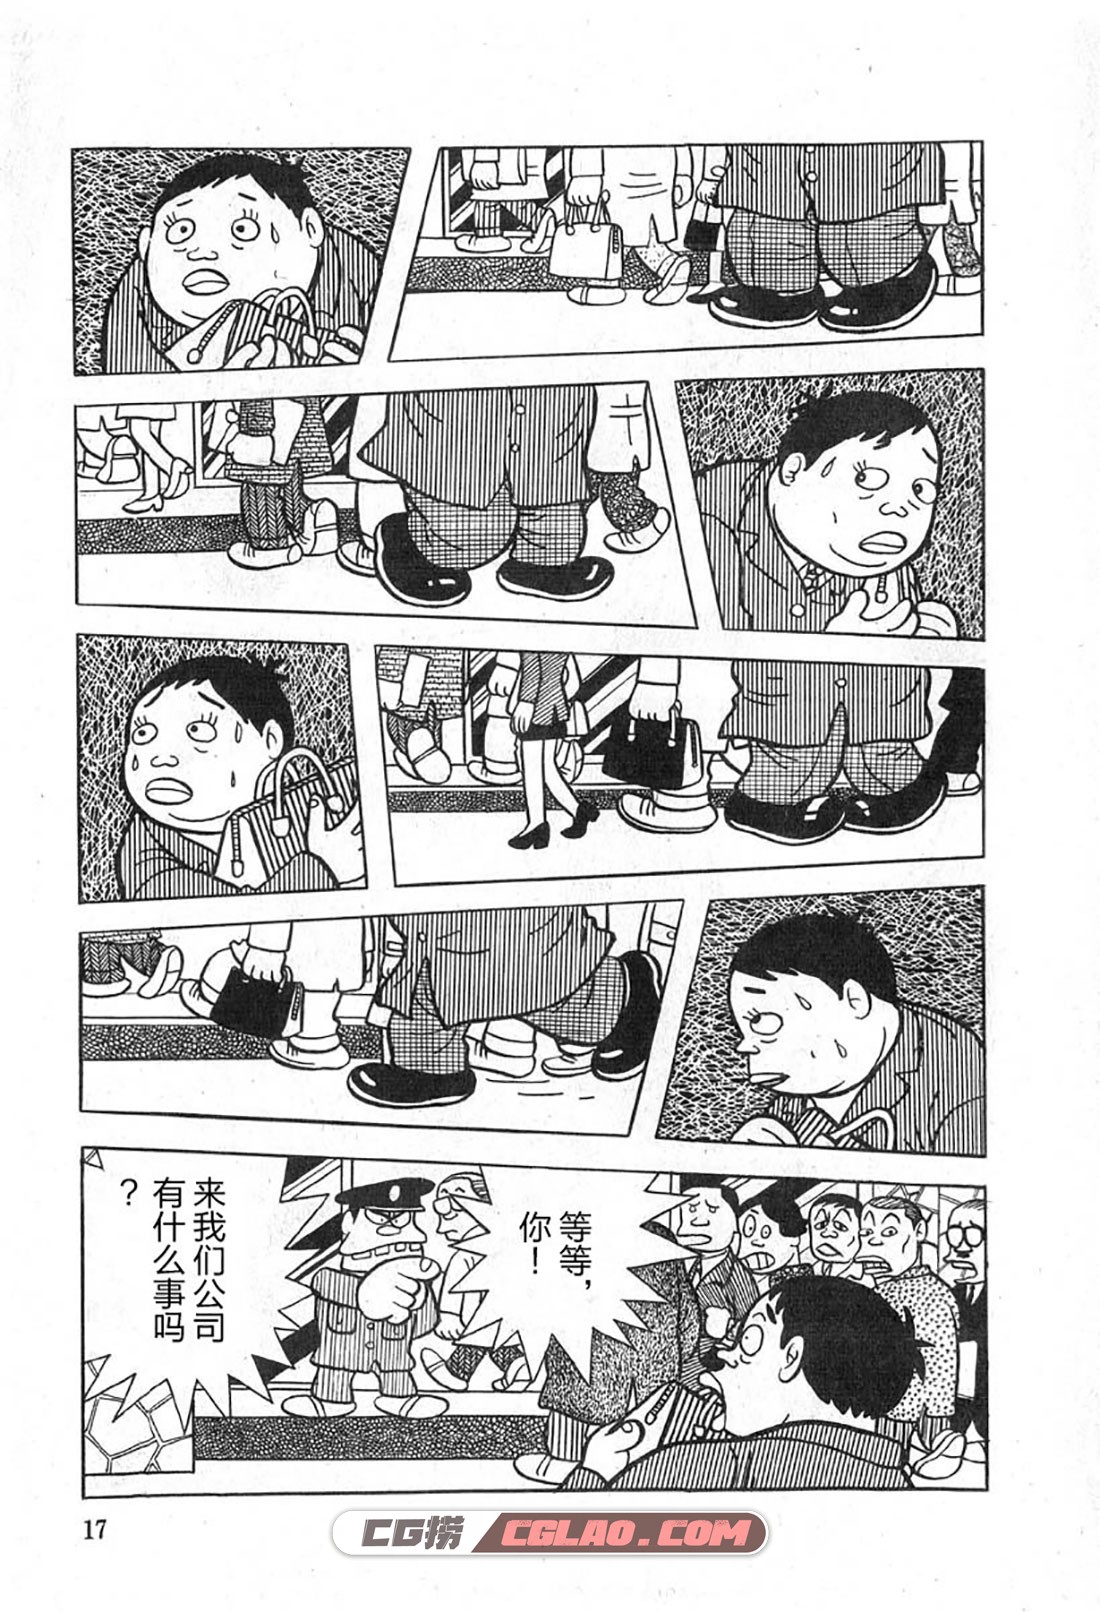 藤子不二雄A黑色幽默短篇集 1卷 短篇漫画百度云网盘下载,0016.jpg